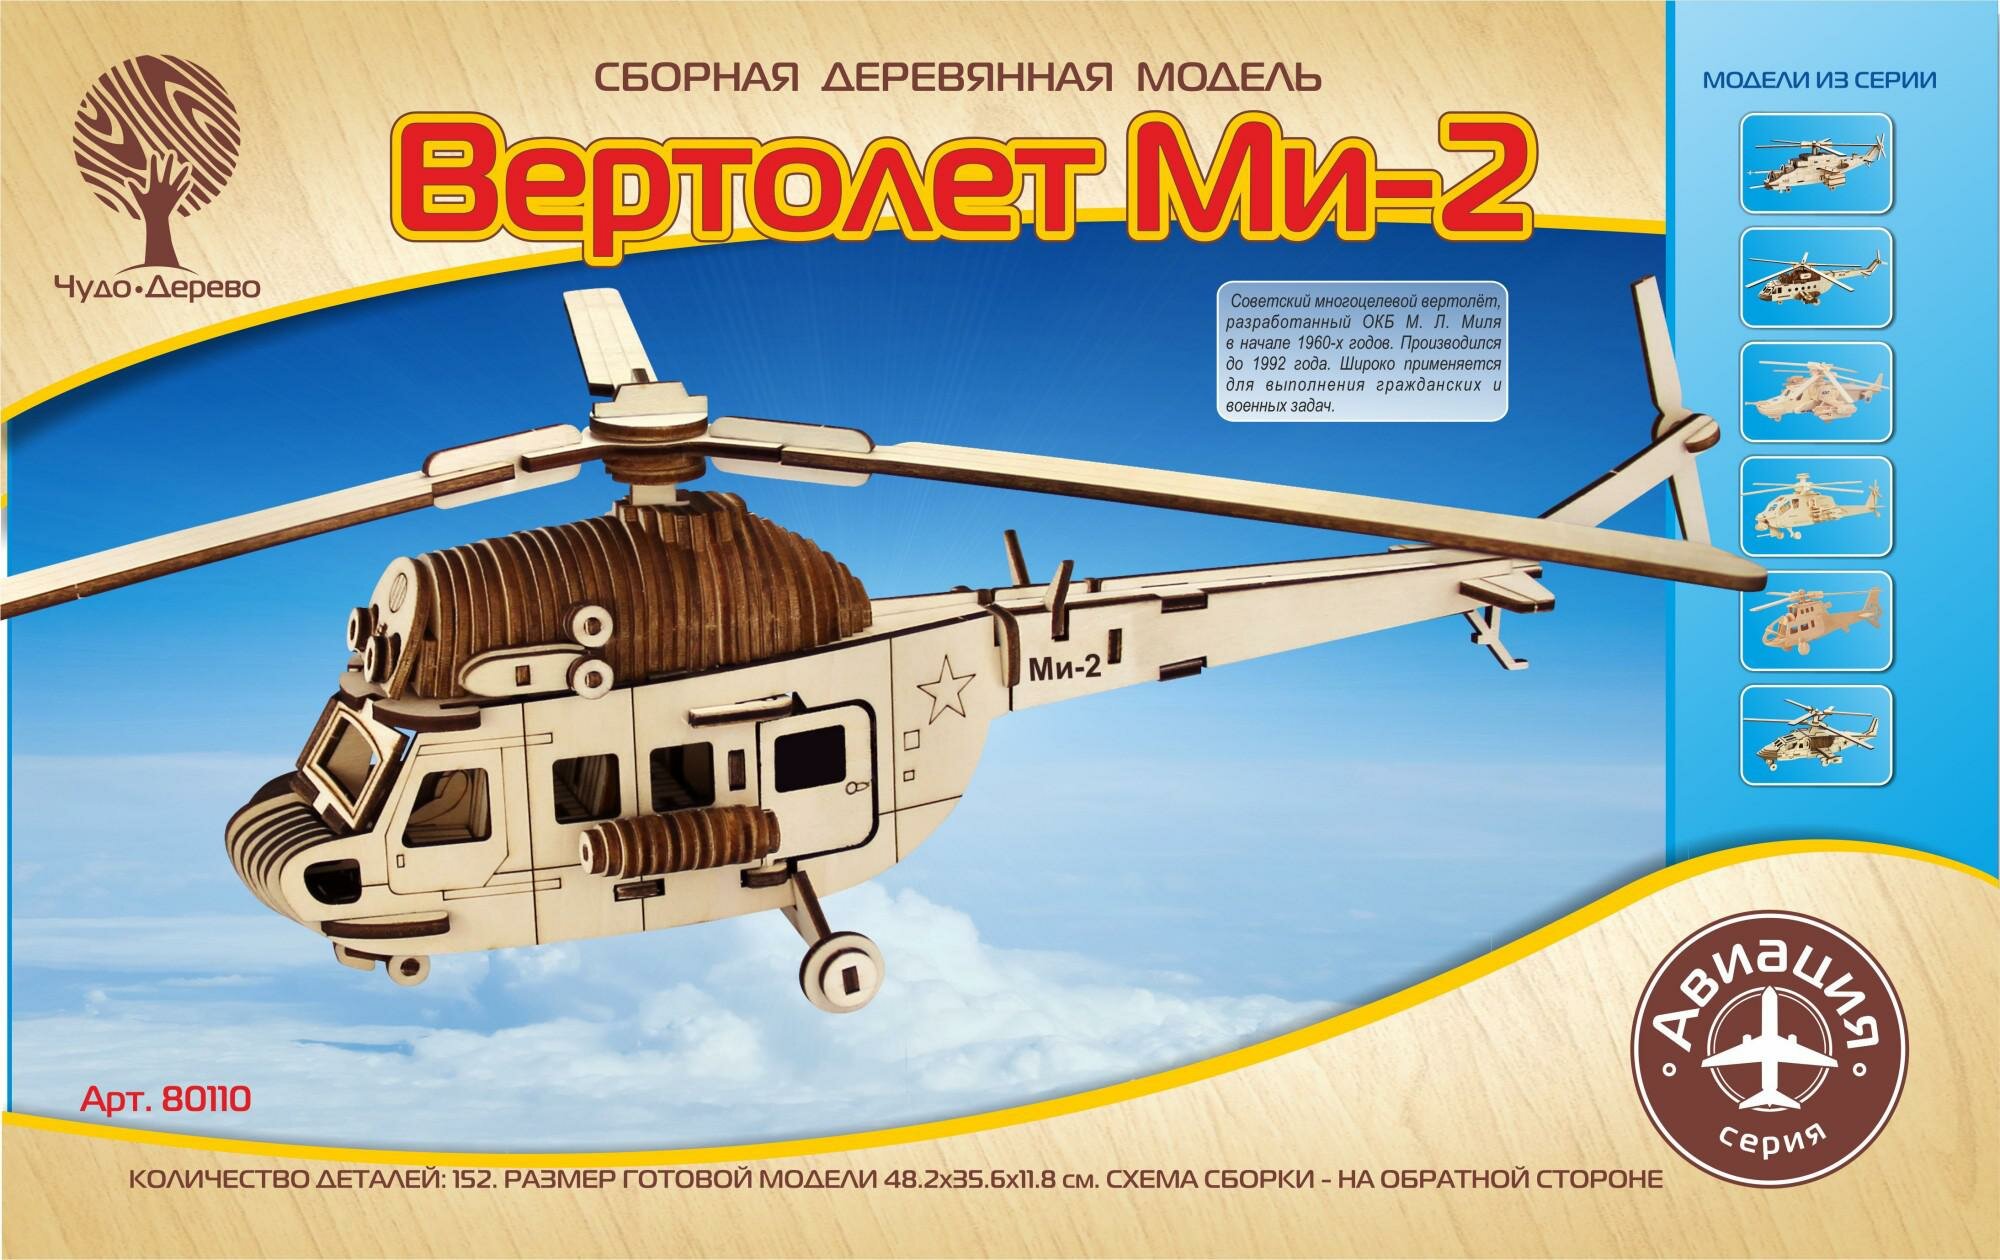 Чудо-дерево (VGA Wooden Toys) Сборная деревянная модель "Вертолет Ми-2"